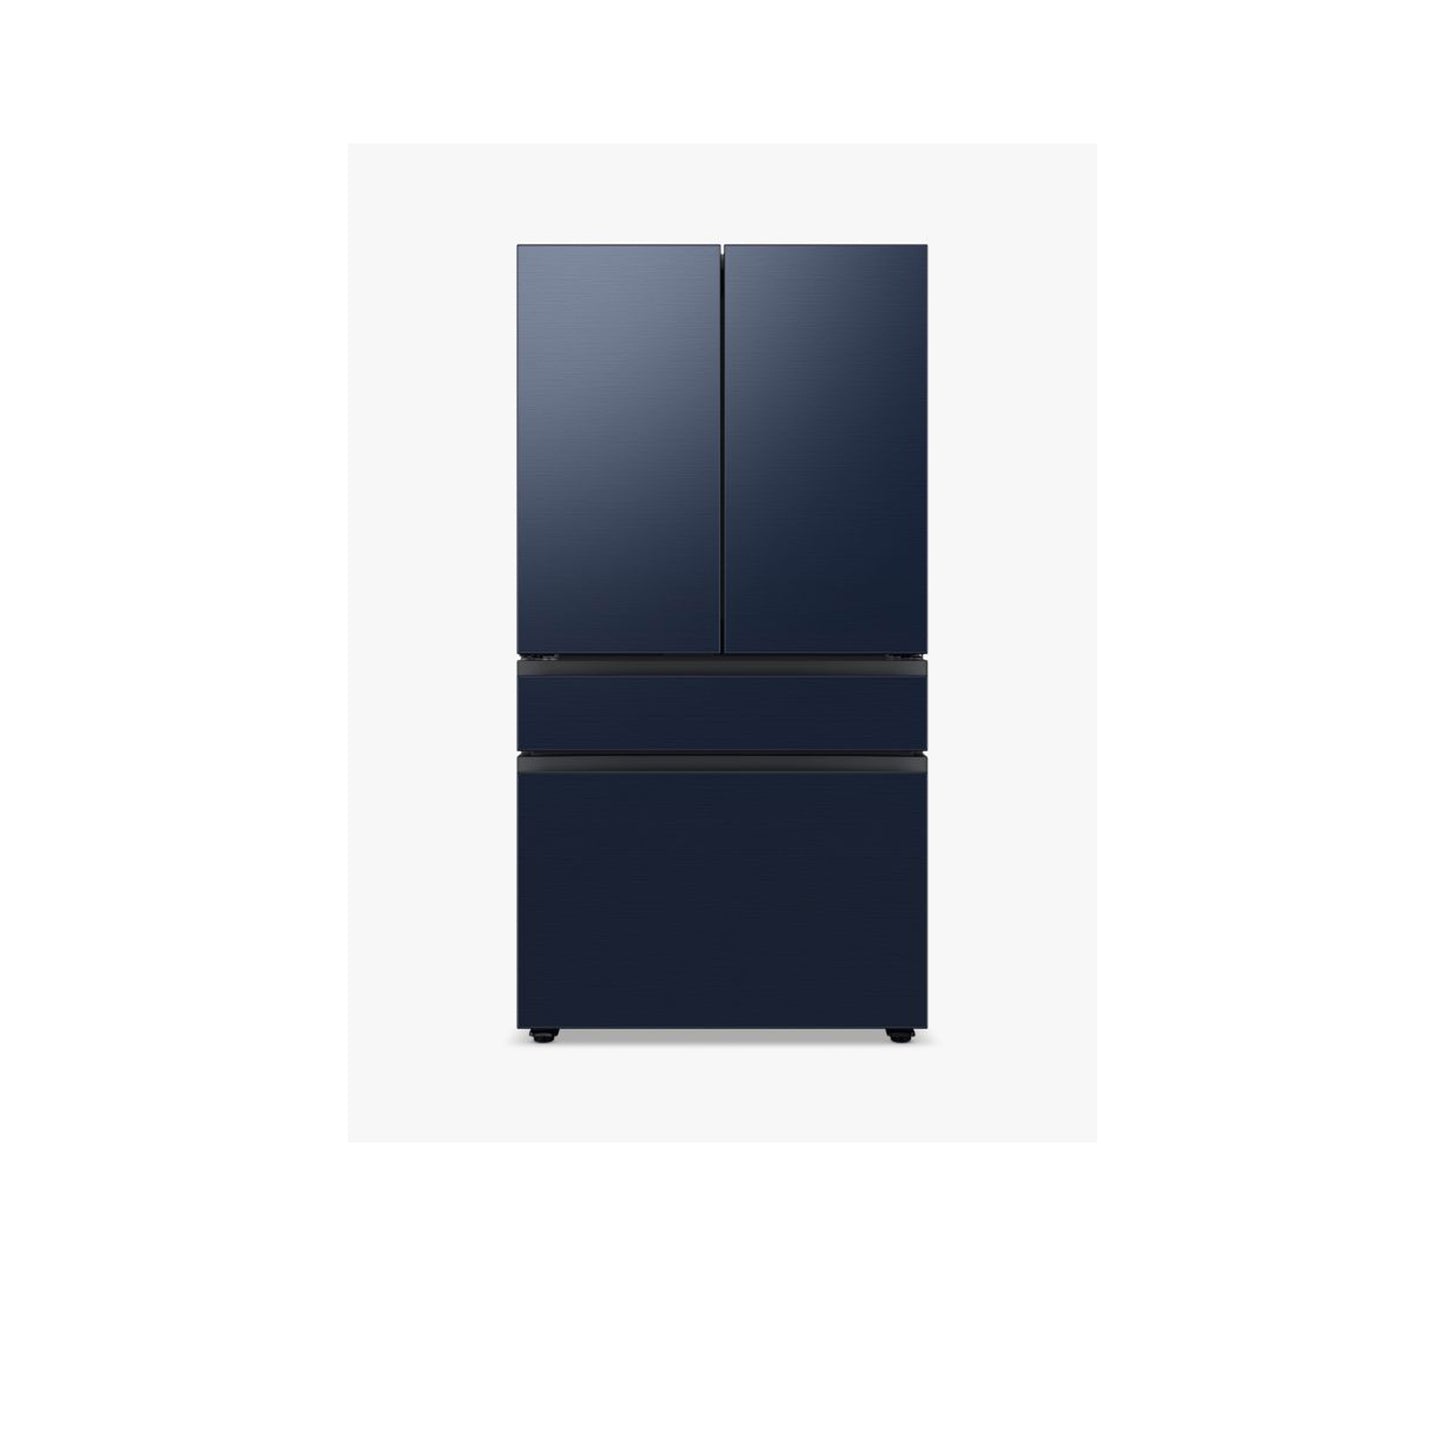 Bespoke 4-Door French Door Refrigerator (23 cu. ft.) with Beverage Center™ in White Glass.